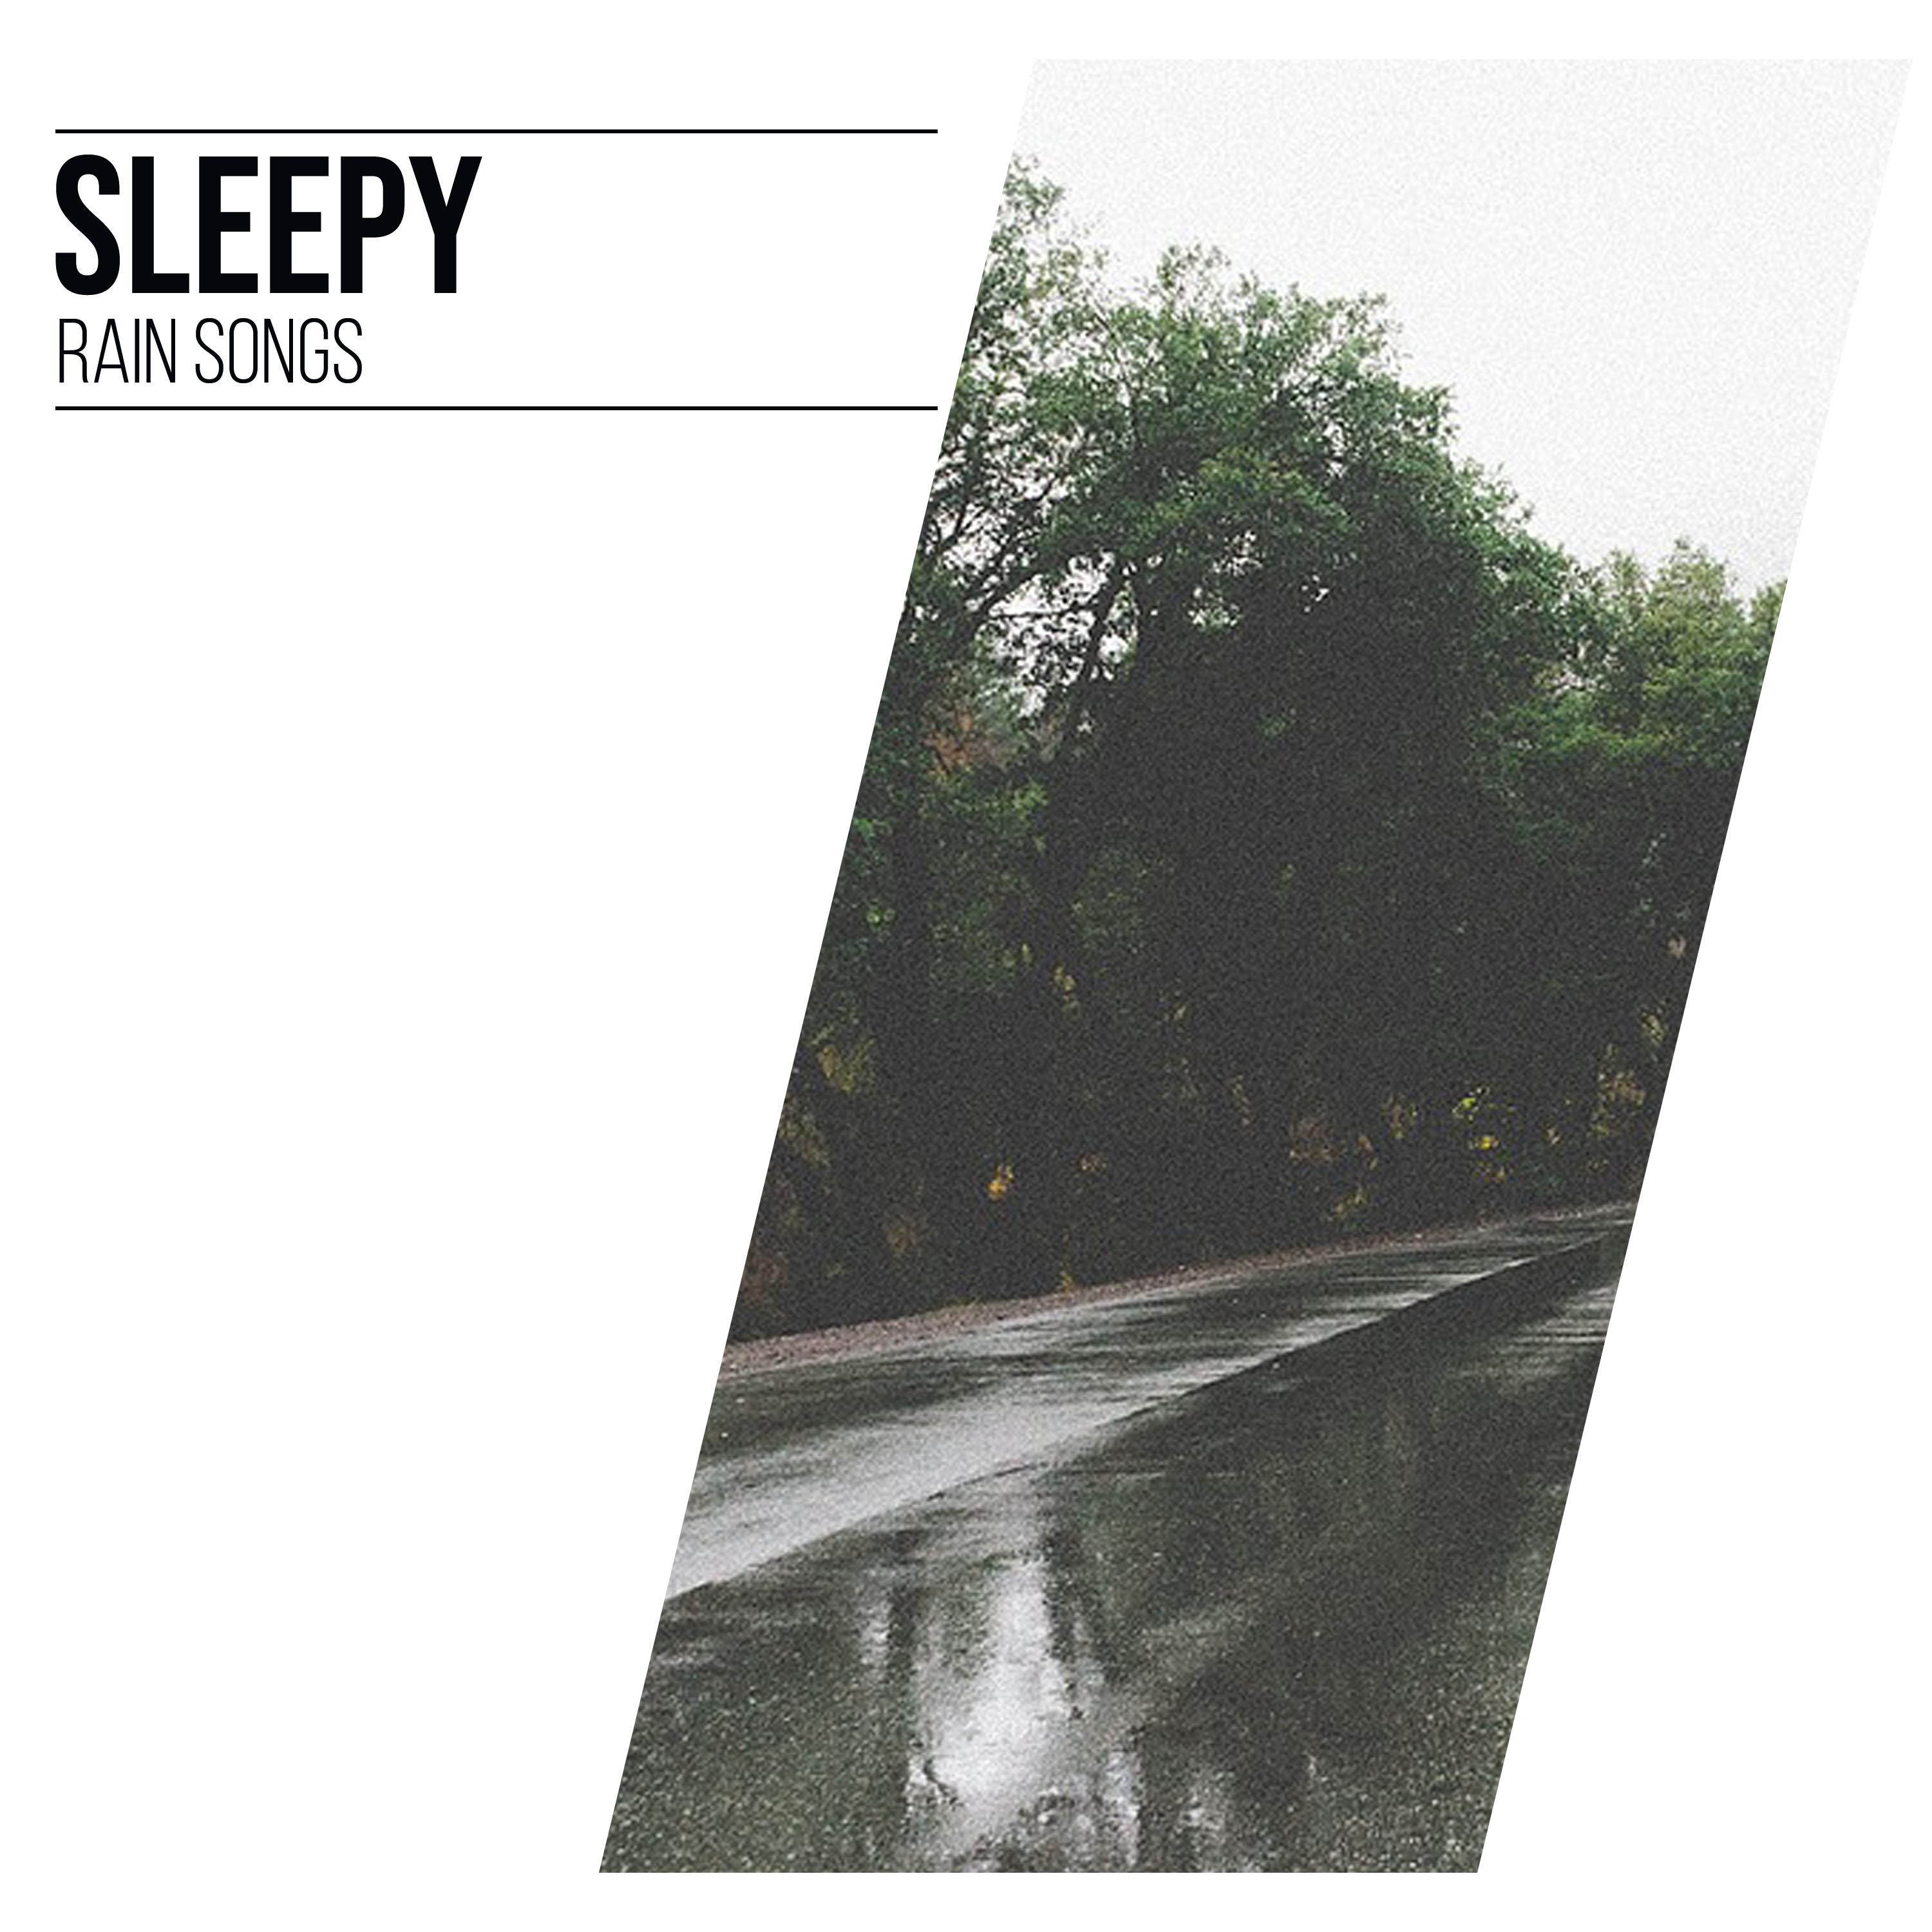 16 Sleepy Rain Songs to Calm the Mind